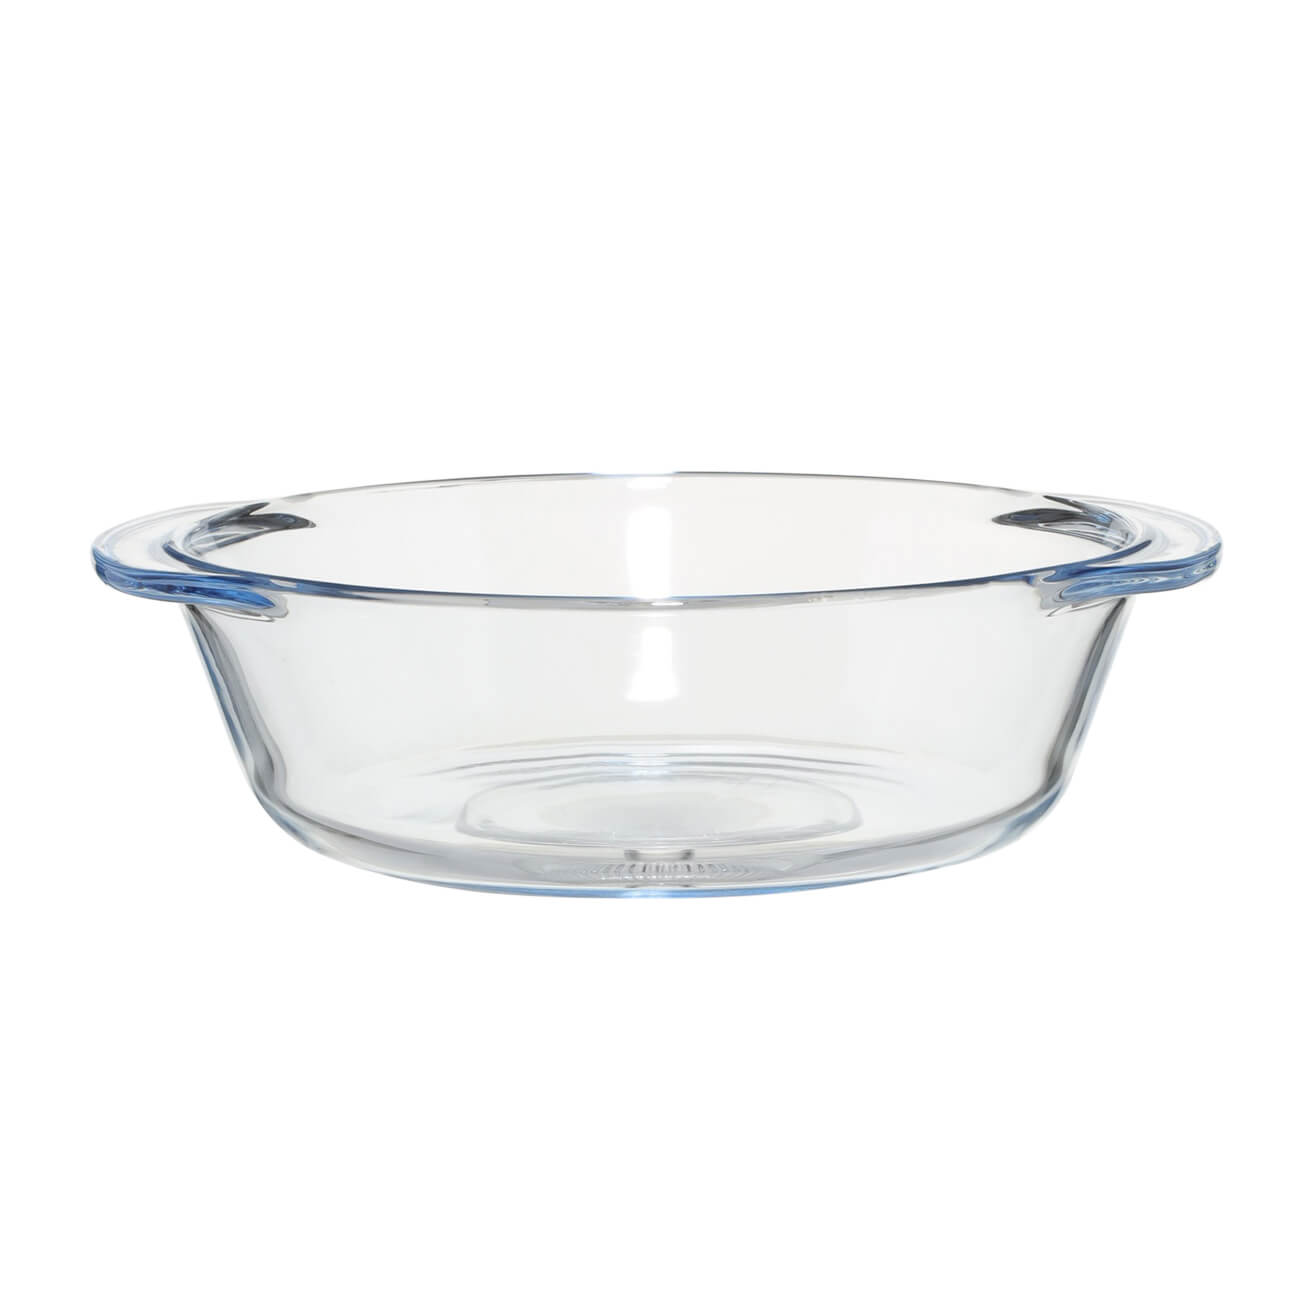 Форма для запекания, 17 см, стекло Т, круглая, Cook форма разъёмная для выпечки кексов